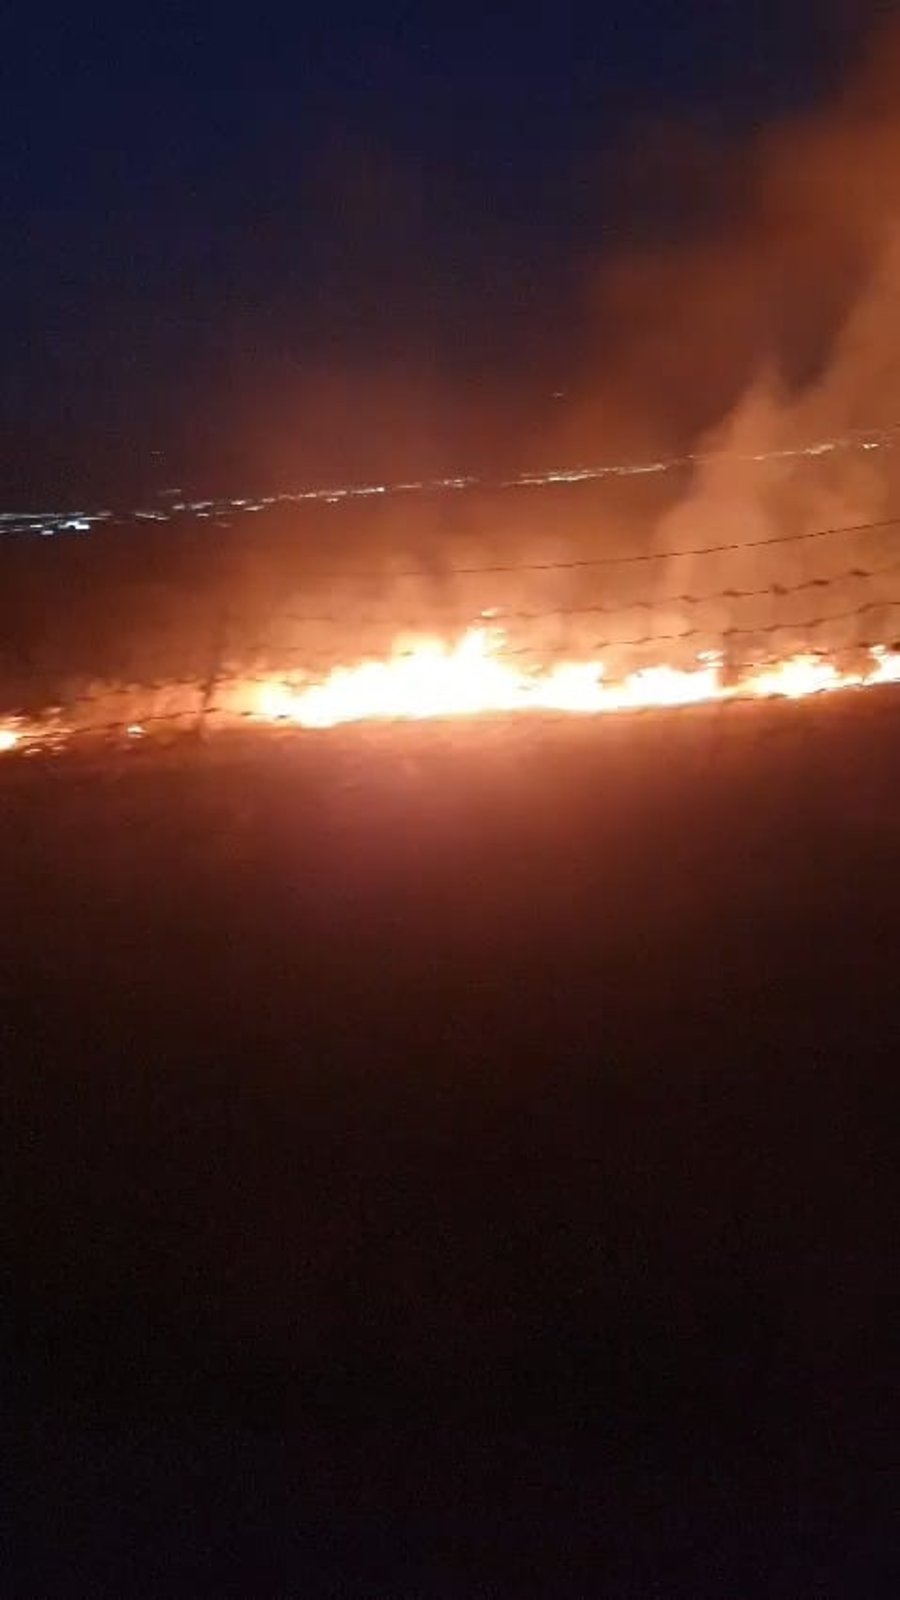 טייסת 'אלעד' הופעלה לראשונה: שריפות ענק בבקעת הירדן